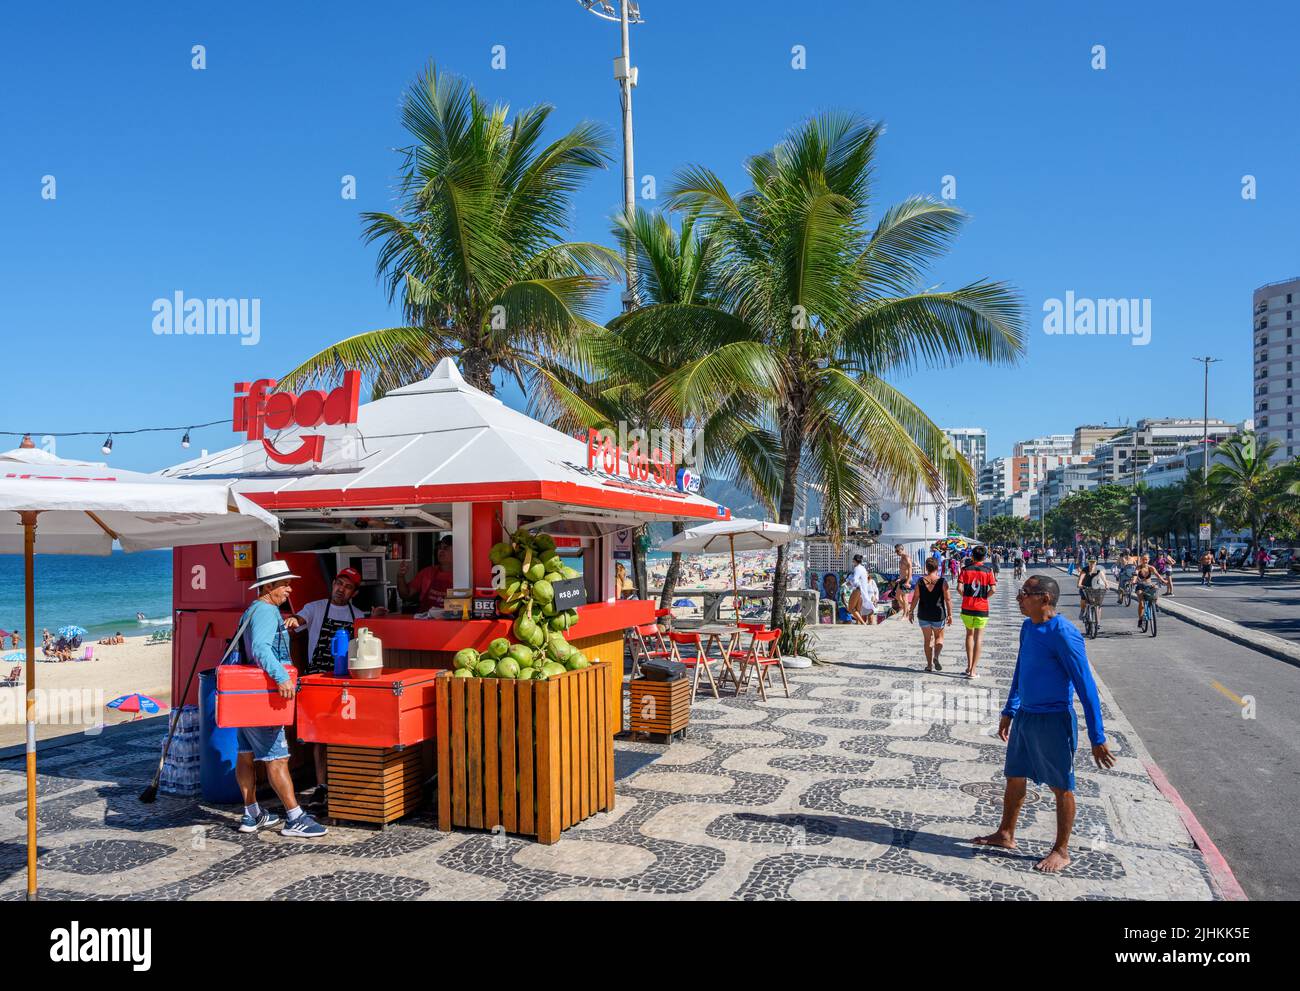 Kiosk on the seafront promenade, Avenida Vieira Souto, Ipanema, Rio de Janeiro, Brazil Stock Photo